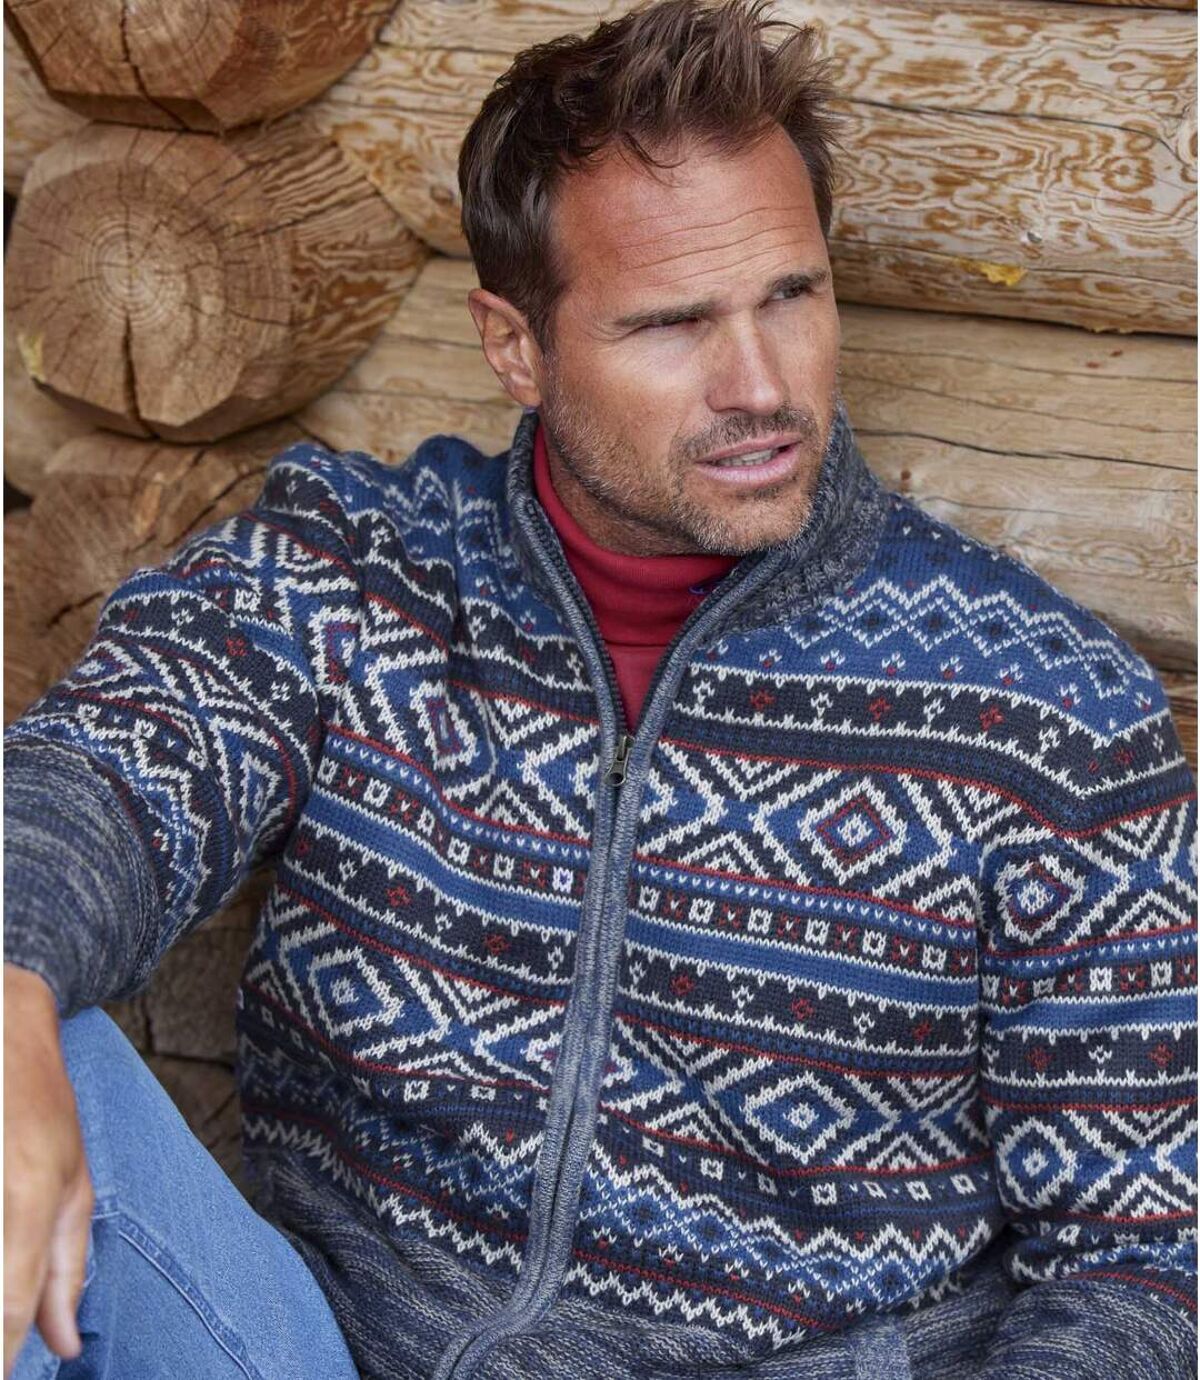 Žakárový pletený sveter na zips Atlas For Men